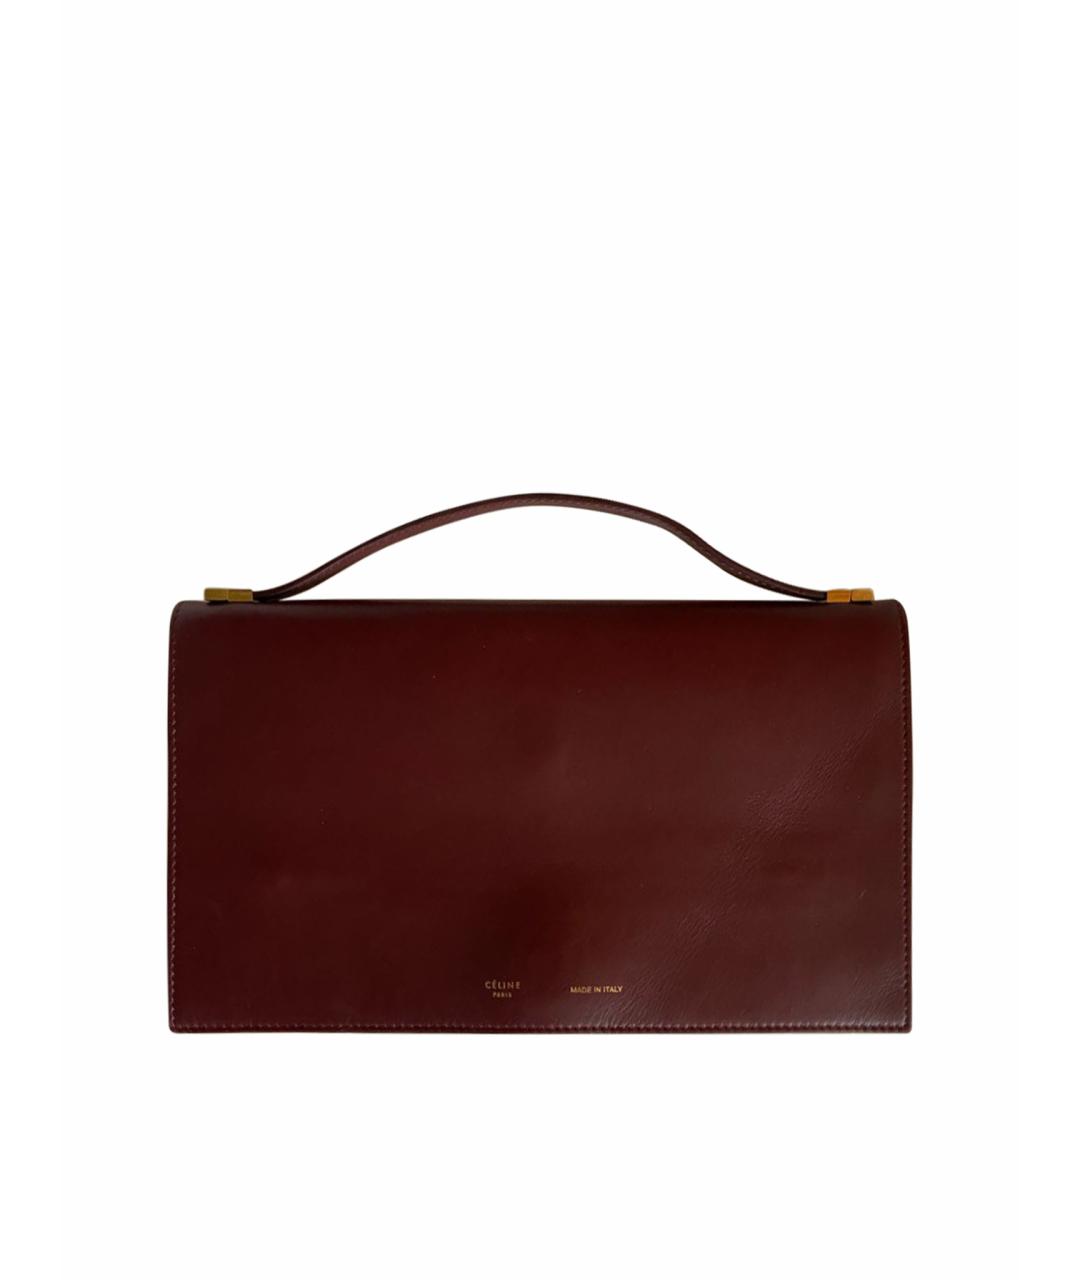 CELINE PRE-OWNED Бордовая кожаная сумка с короткими ручками, фото 1